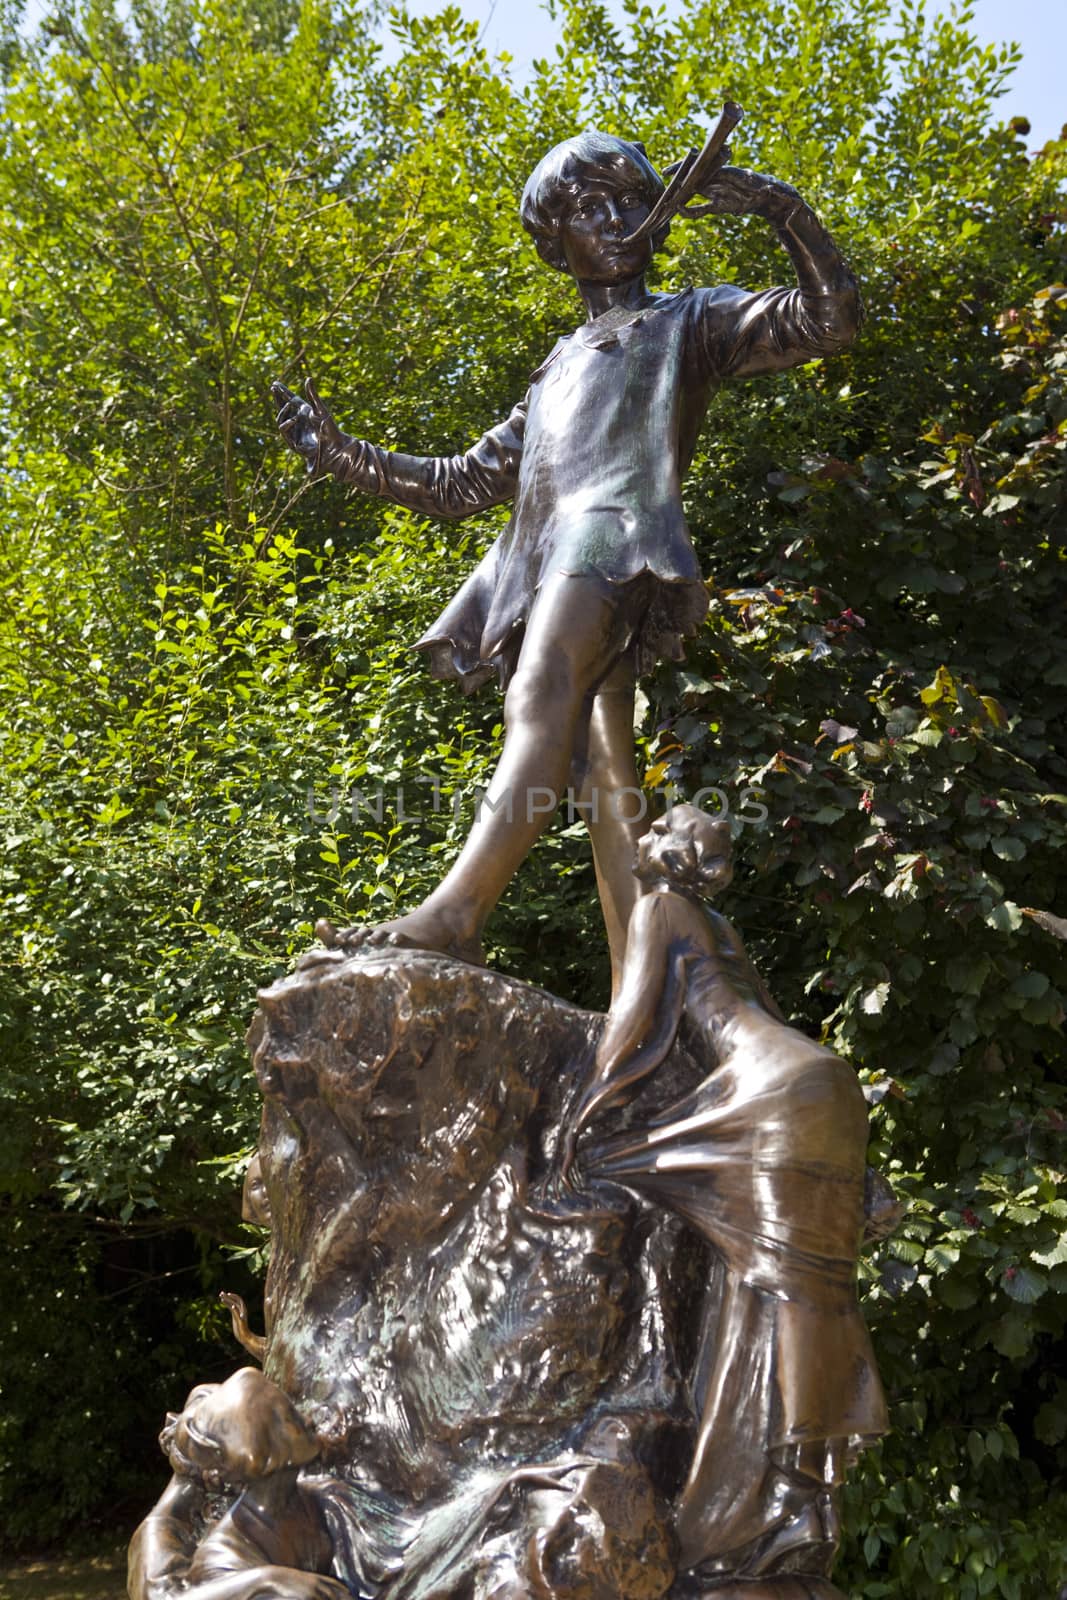 Peter Pan statue in Kensington Gardens, London.